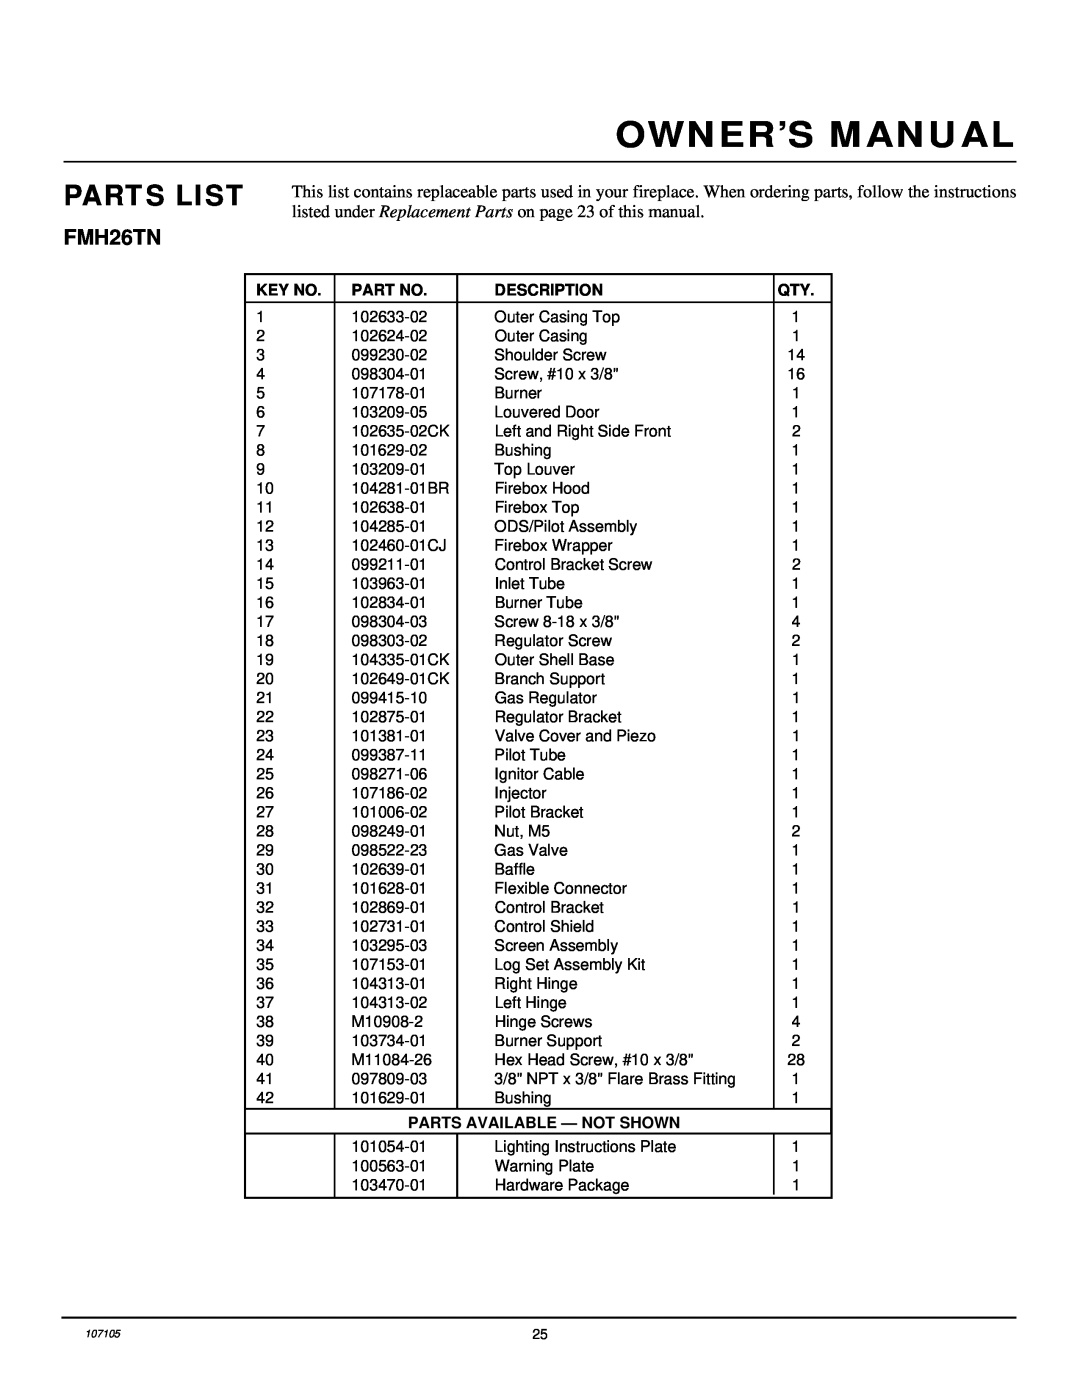 Desa FMH26TN 14 installation manual Parts List, Description, Parts Available - Not Shown 